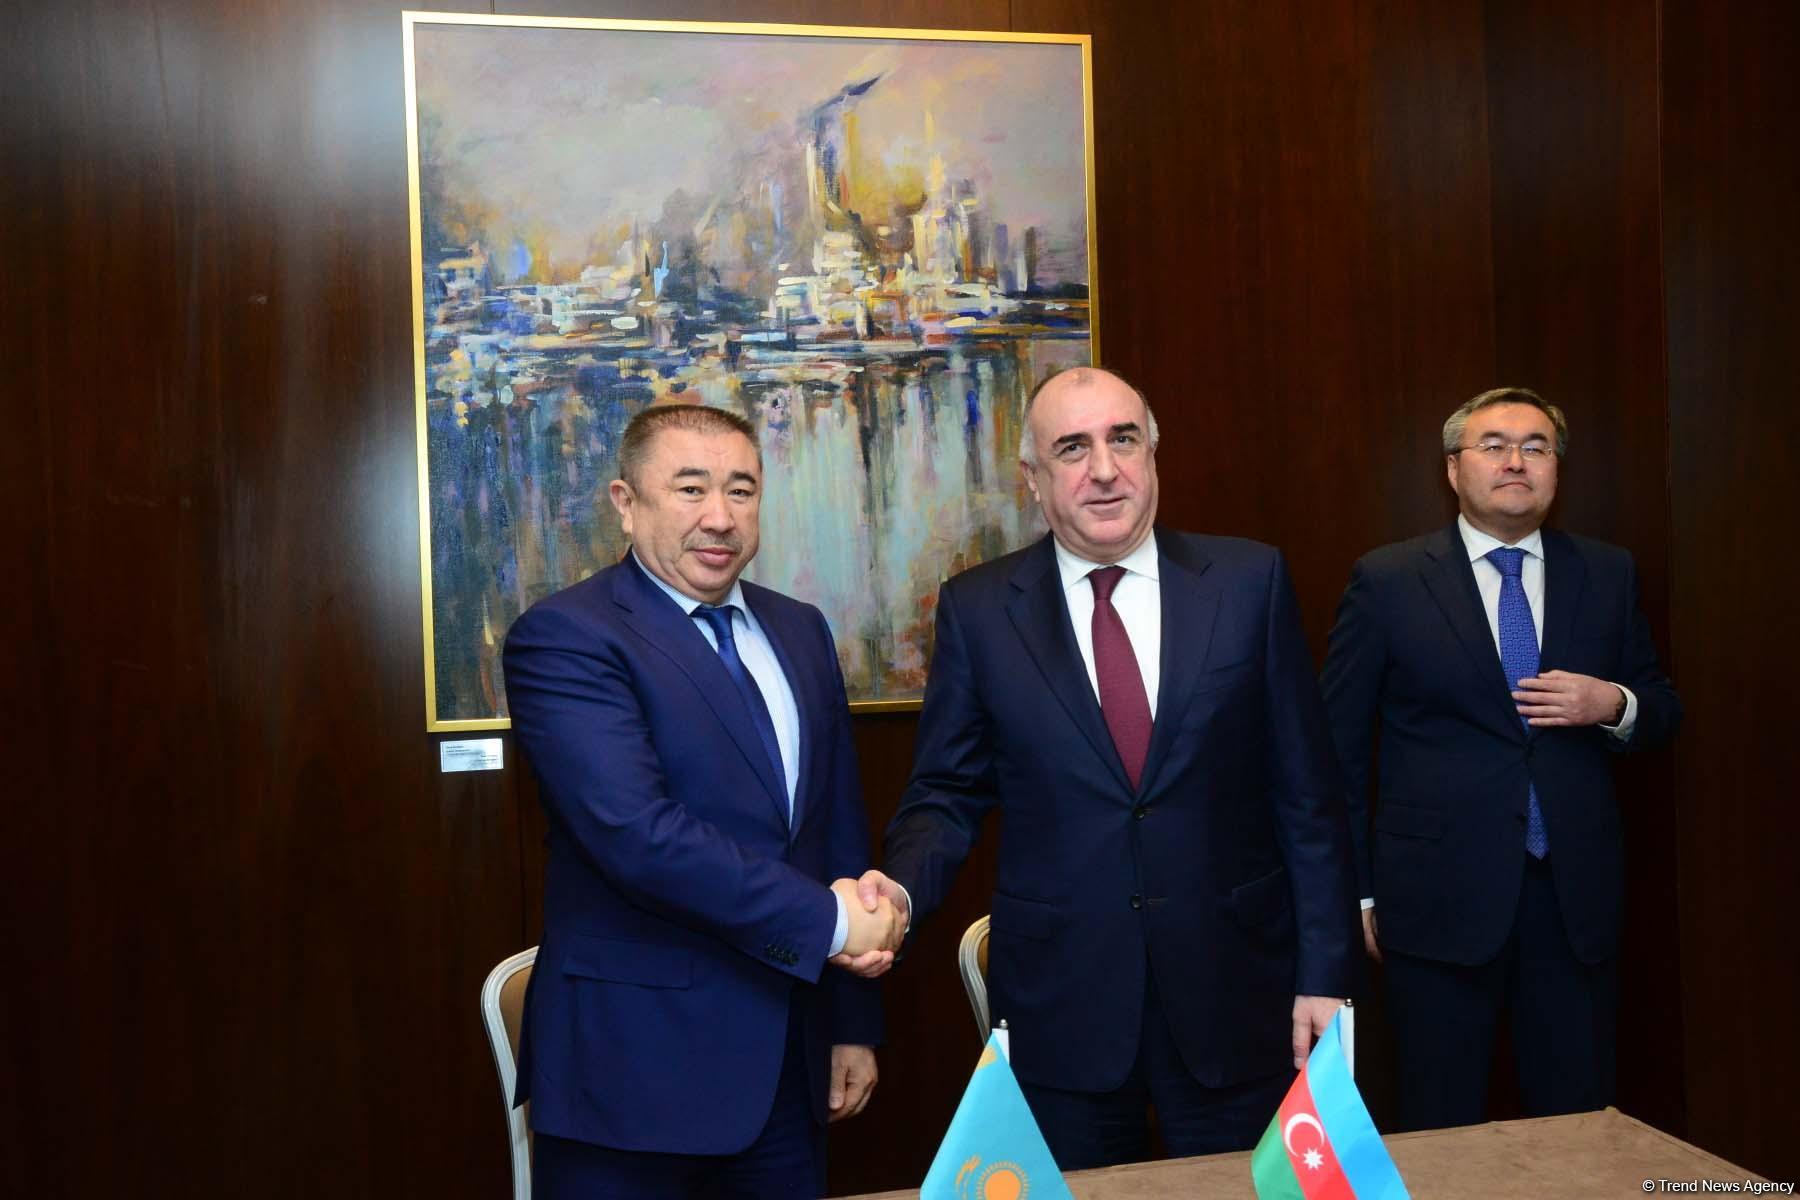 Azərbaycan və Qazaxıstan arasında vizasız rejim qaydaları dəyişdi (FOTO)